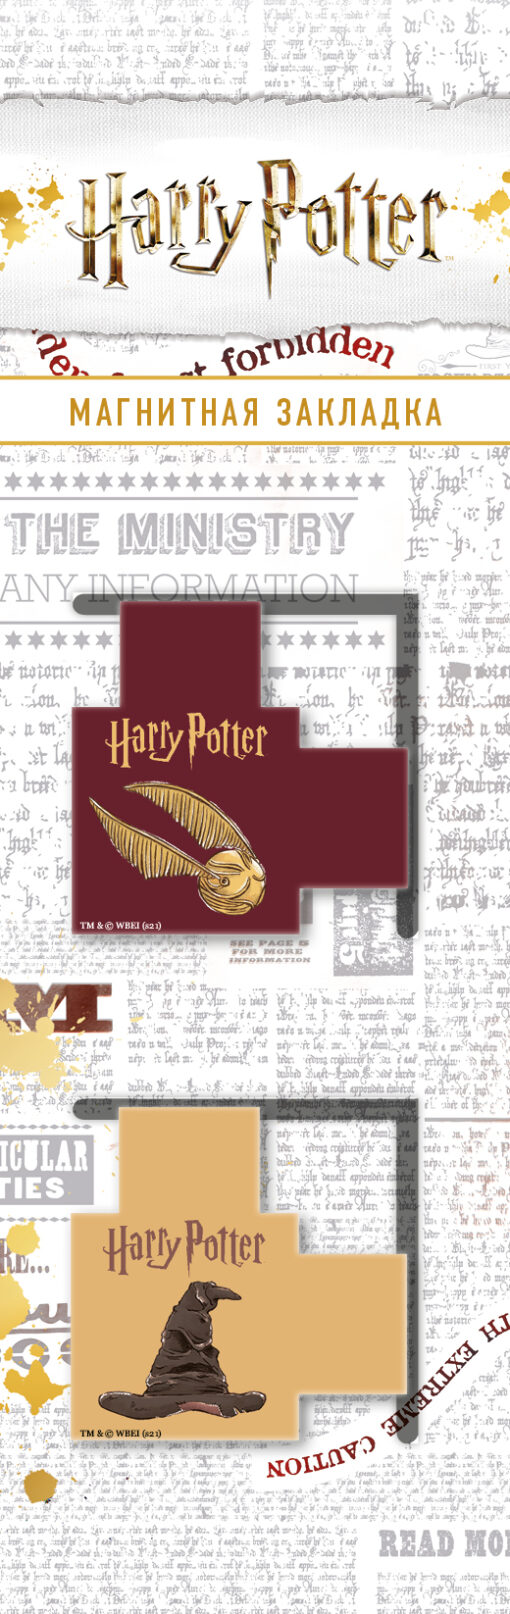 Magnētiskās grāmatzīmes. Harijs Poters. Šķirošanas cepure un Golden Snitch